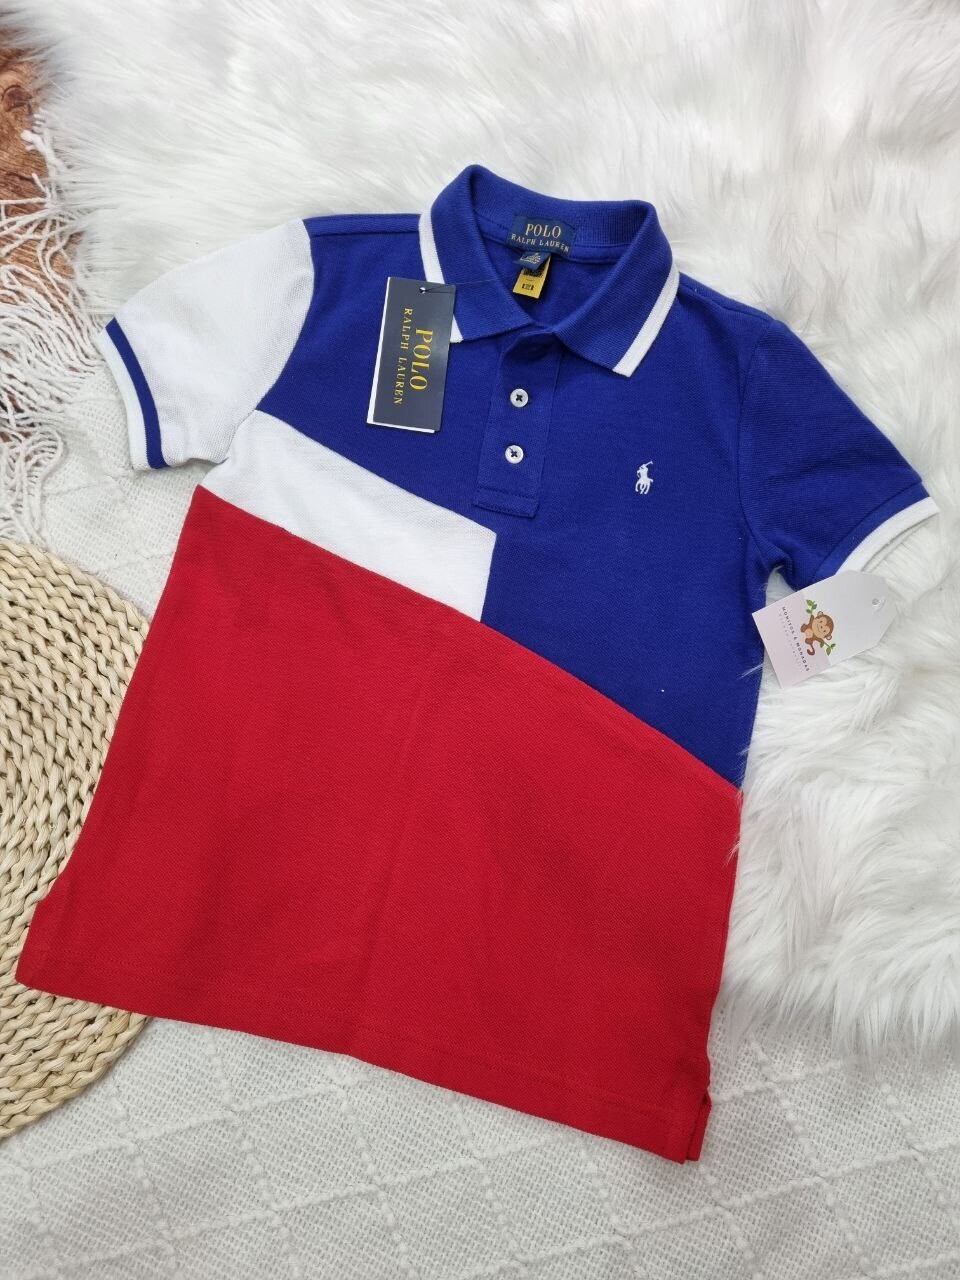 Camisa Polo Ralph Lauren, azul + rojo + blanco, 5 años